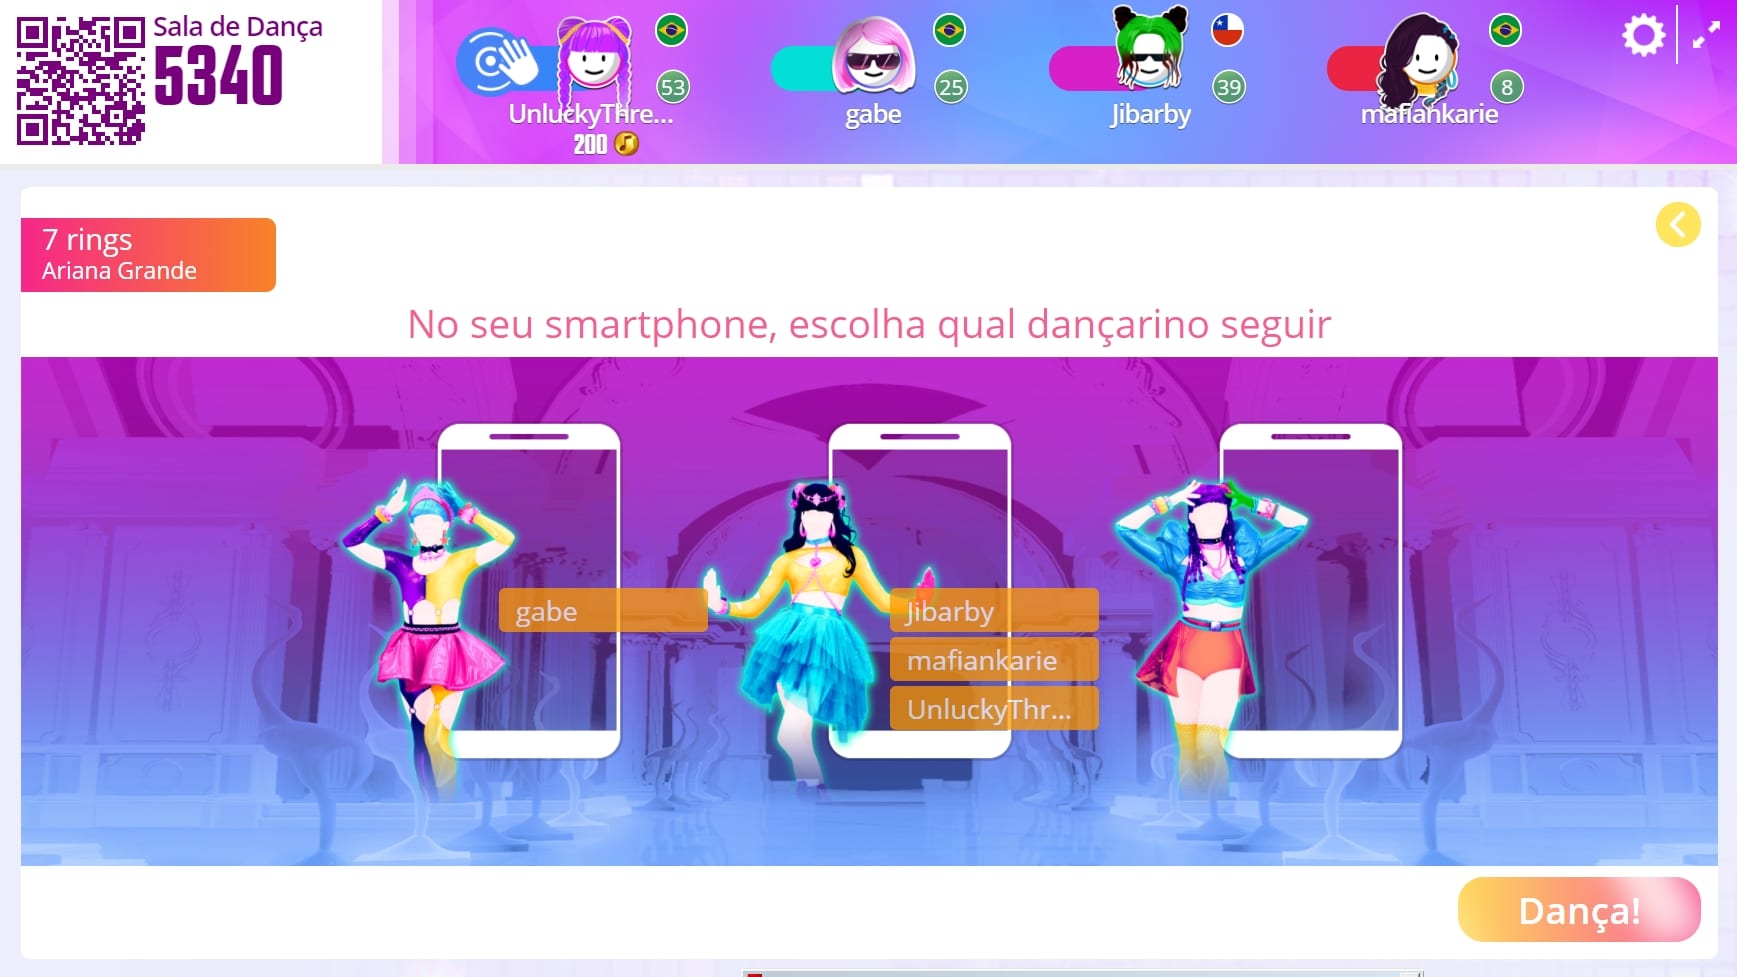 Captura de tela do jogo Just Dance Now, grátis para celular